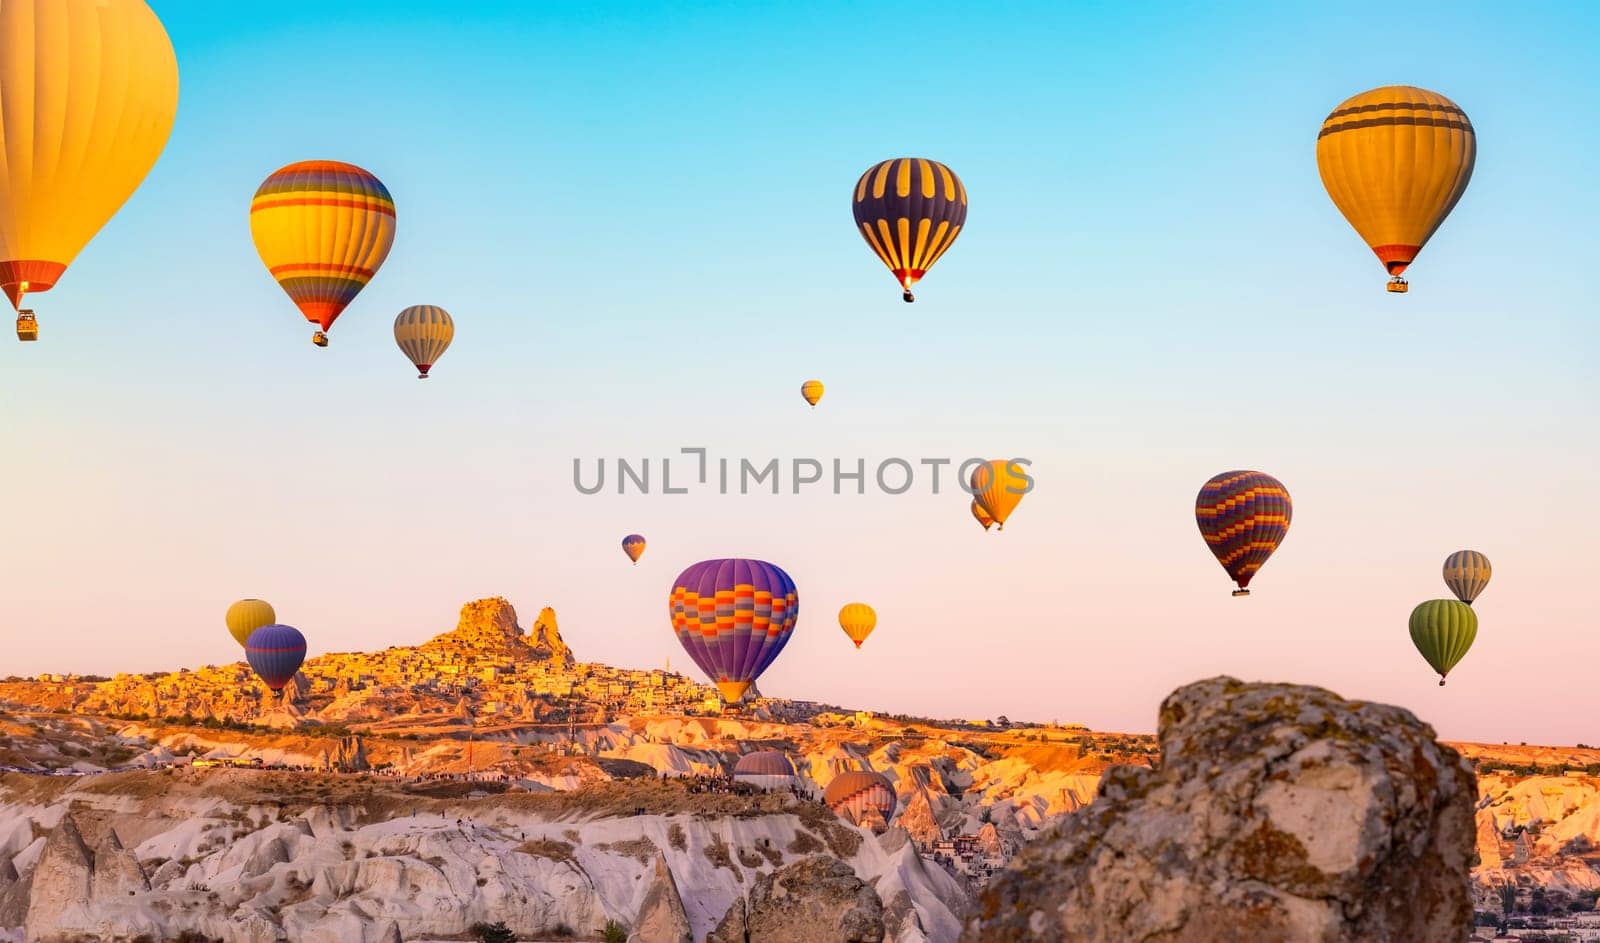 Hot air balloons in Cappadocia, Turkey by GekaSkr